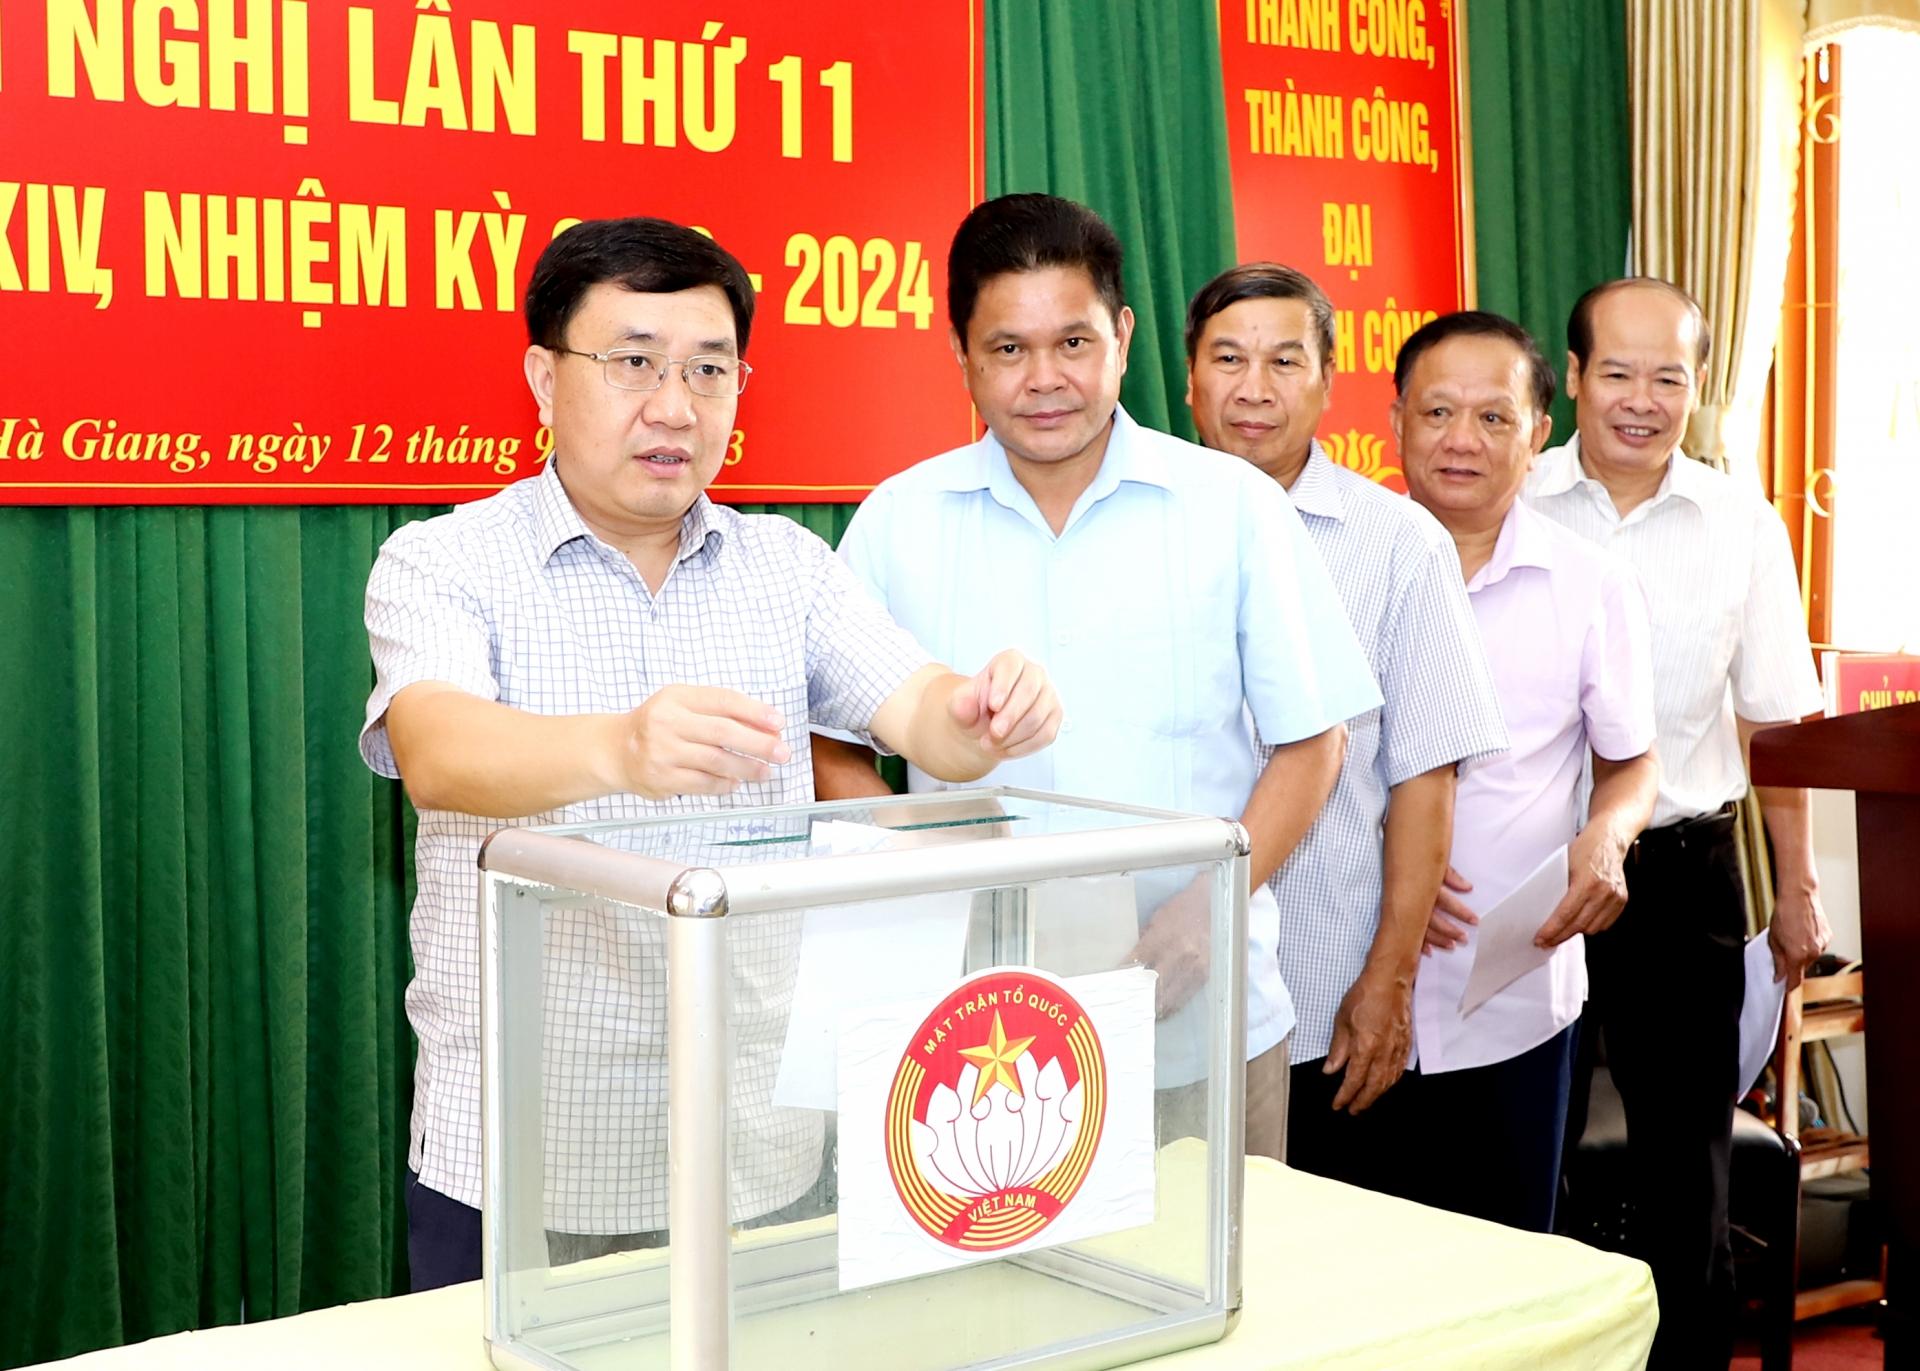 Quyền Bí thư Tỉnh ủy Nguyễn Mạnh Dũng và các đại biểu bỏ phiếu tín nhiệm đối với đồng chí Vàng Seo Cón, Chủ tịch Ủy ban MTTQ tỉnh.